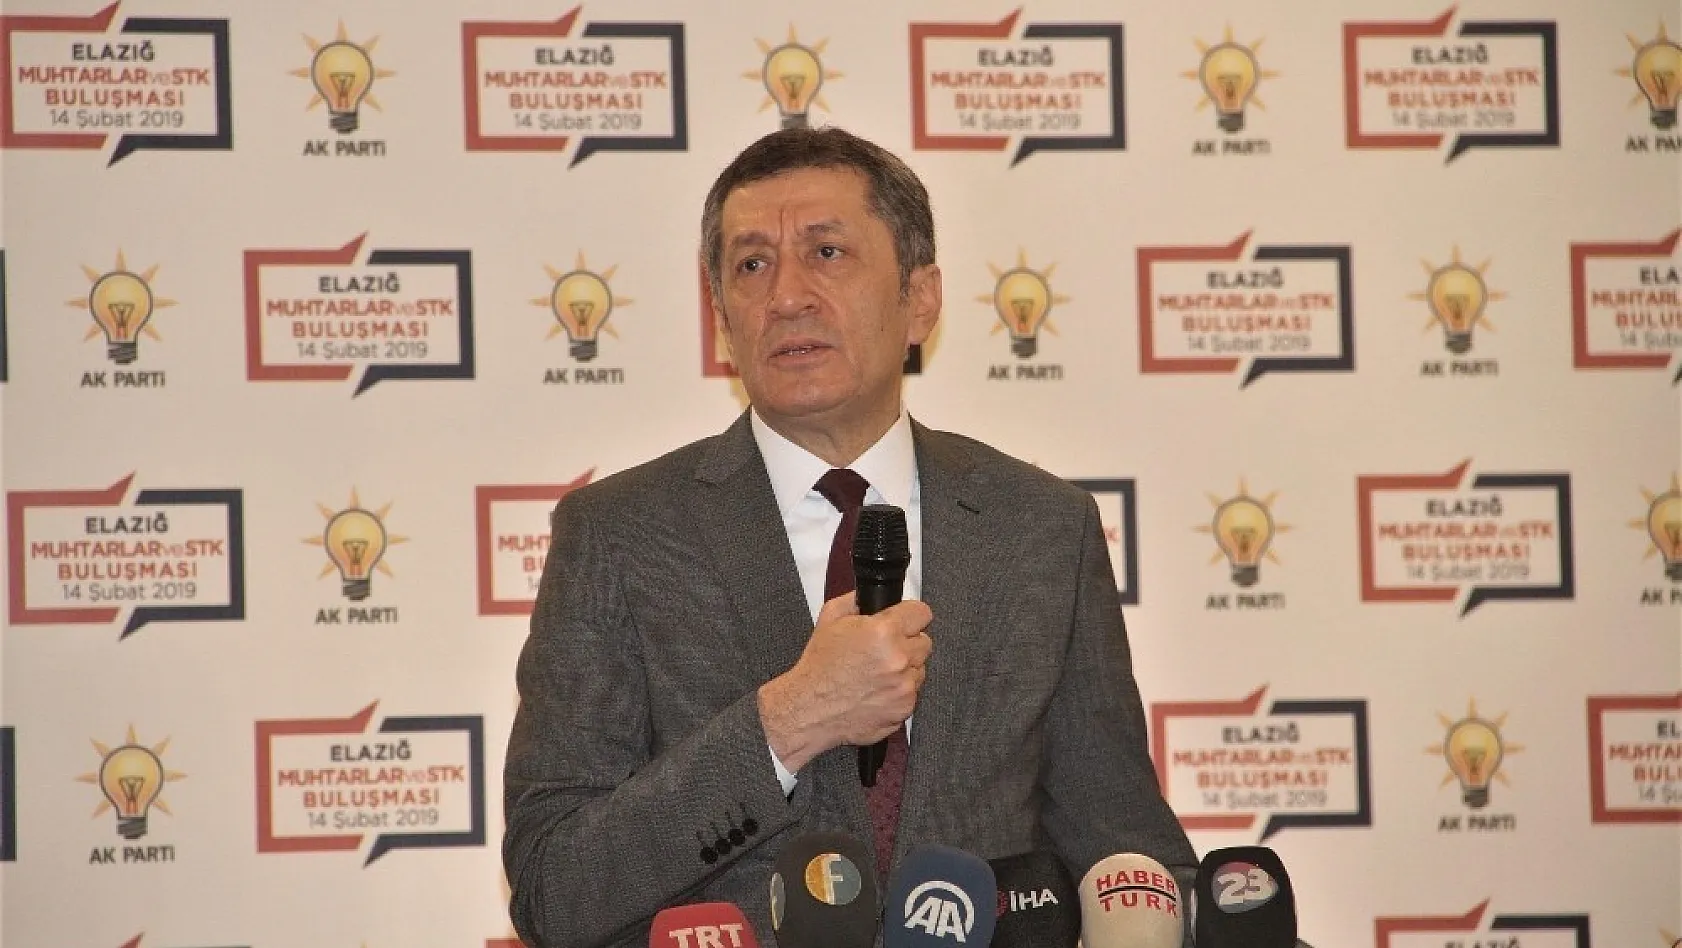 Milli Eğitim Bakanı Selçuk, Elazığ'da